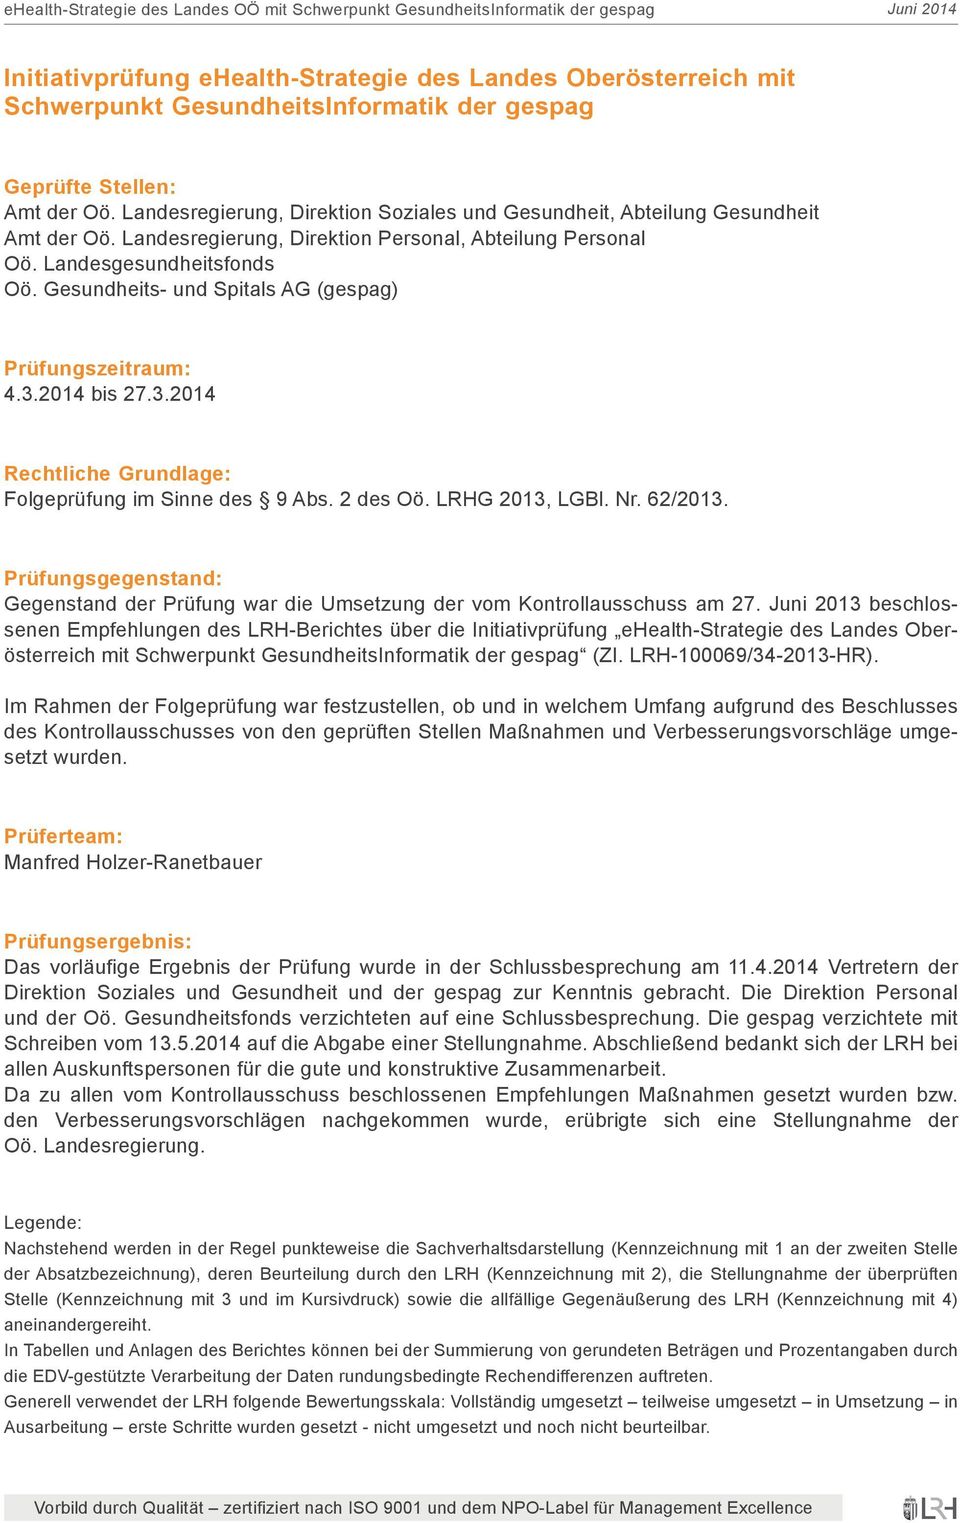 Gesundheits- und Spitals AG (gespag) Prüfungszeitraum: 4.3.2014 bis 27.3.2014 Rechtliche Grundlage: Folgeprüfung im Sinne des 9 Abs. 2 des Oö. LRHG 2013, LGBl. Nr. 62/2013.